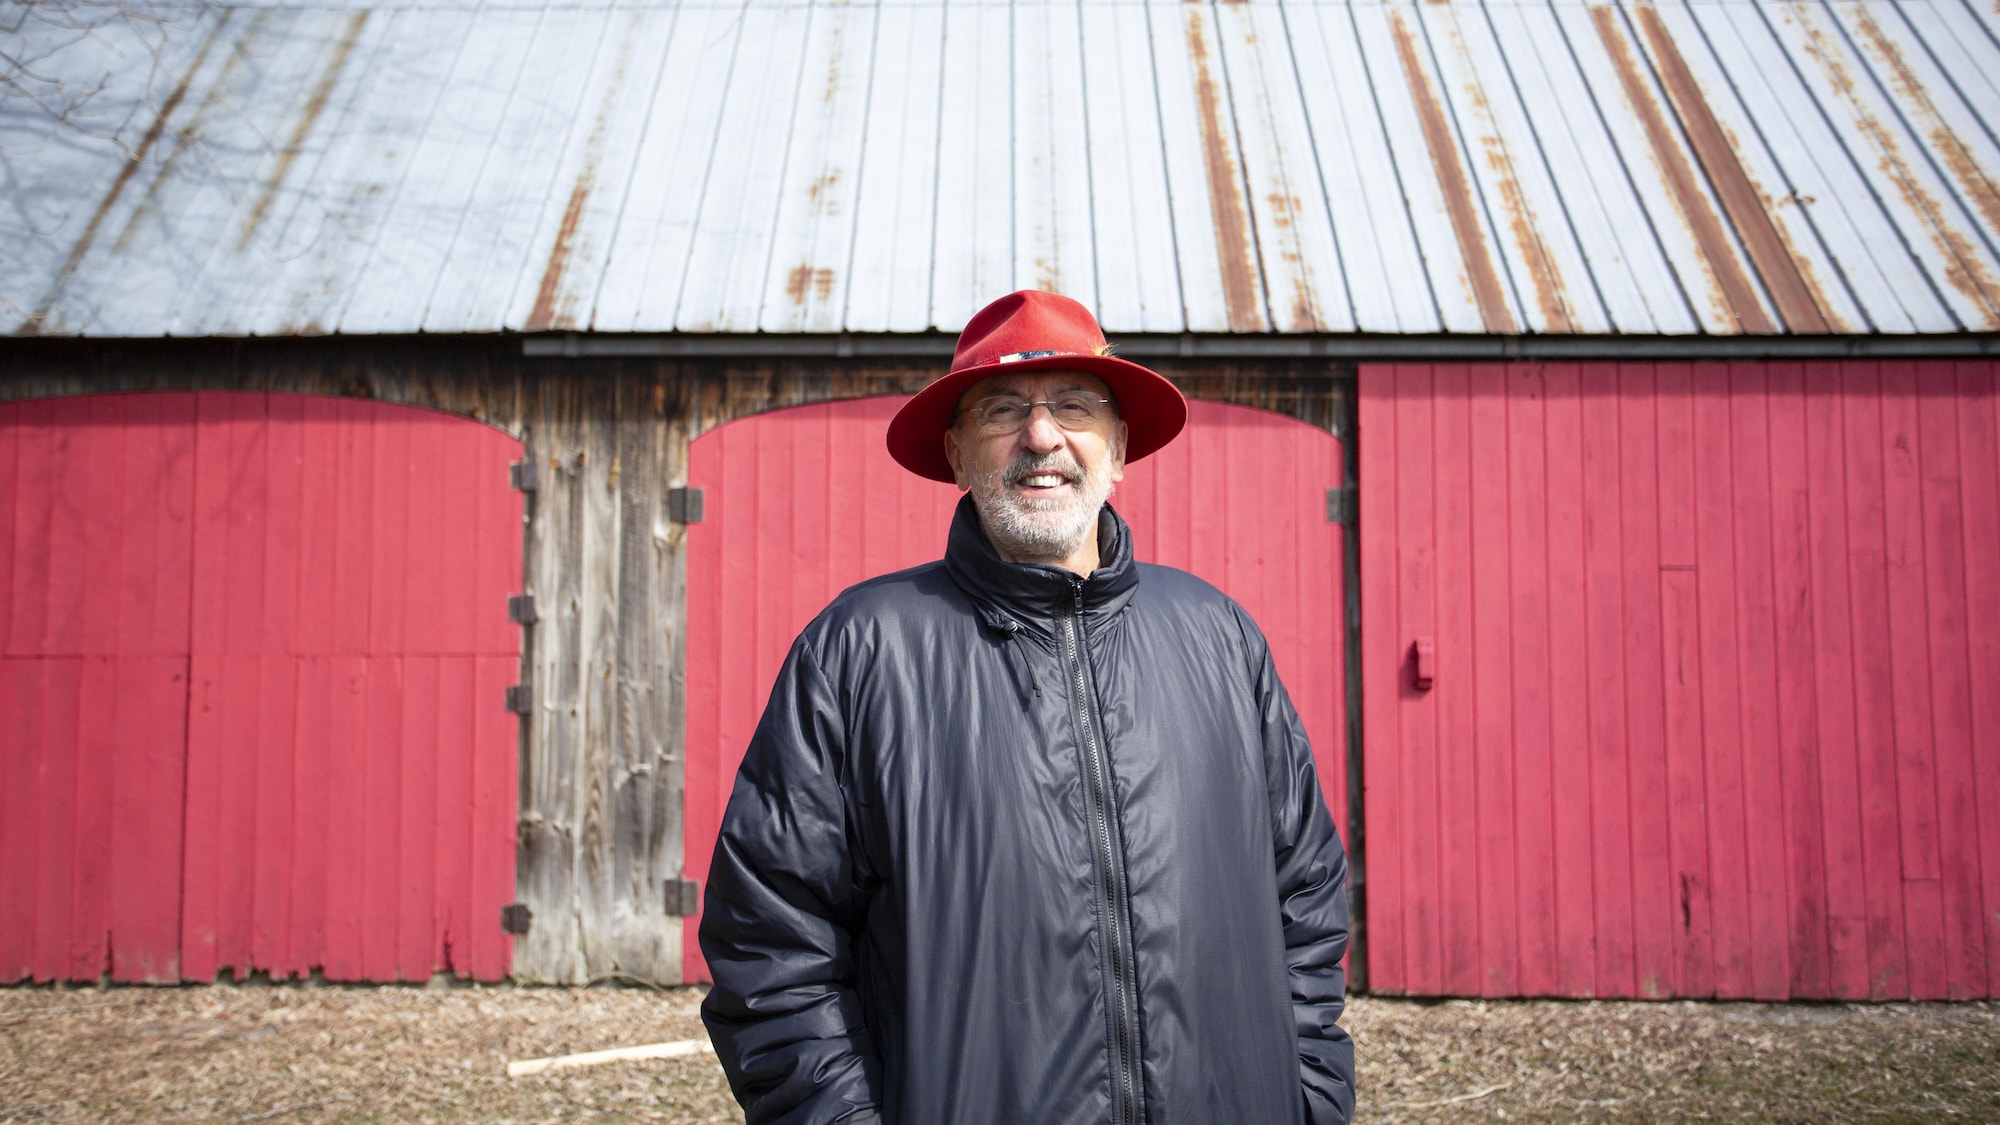 Gaston Lepage se tient devant une grange en bois, dont les portes sont peintes en rouge. Il sourit et porte un chapeau à large rebords rouge.